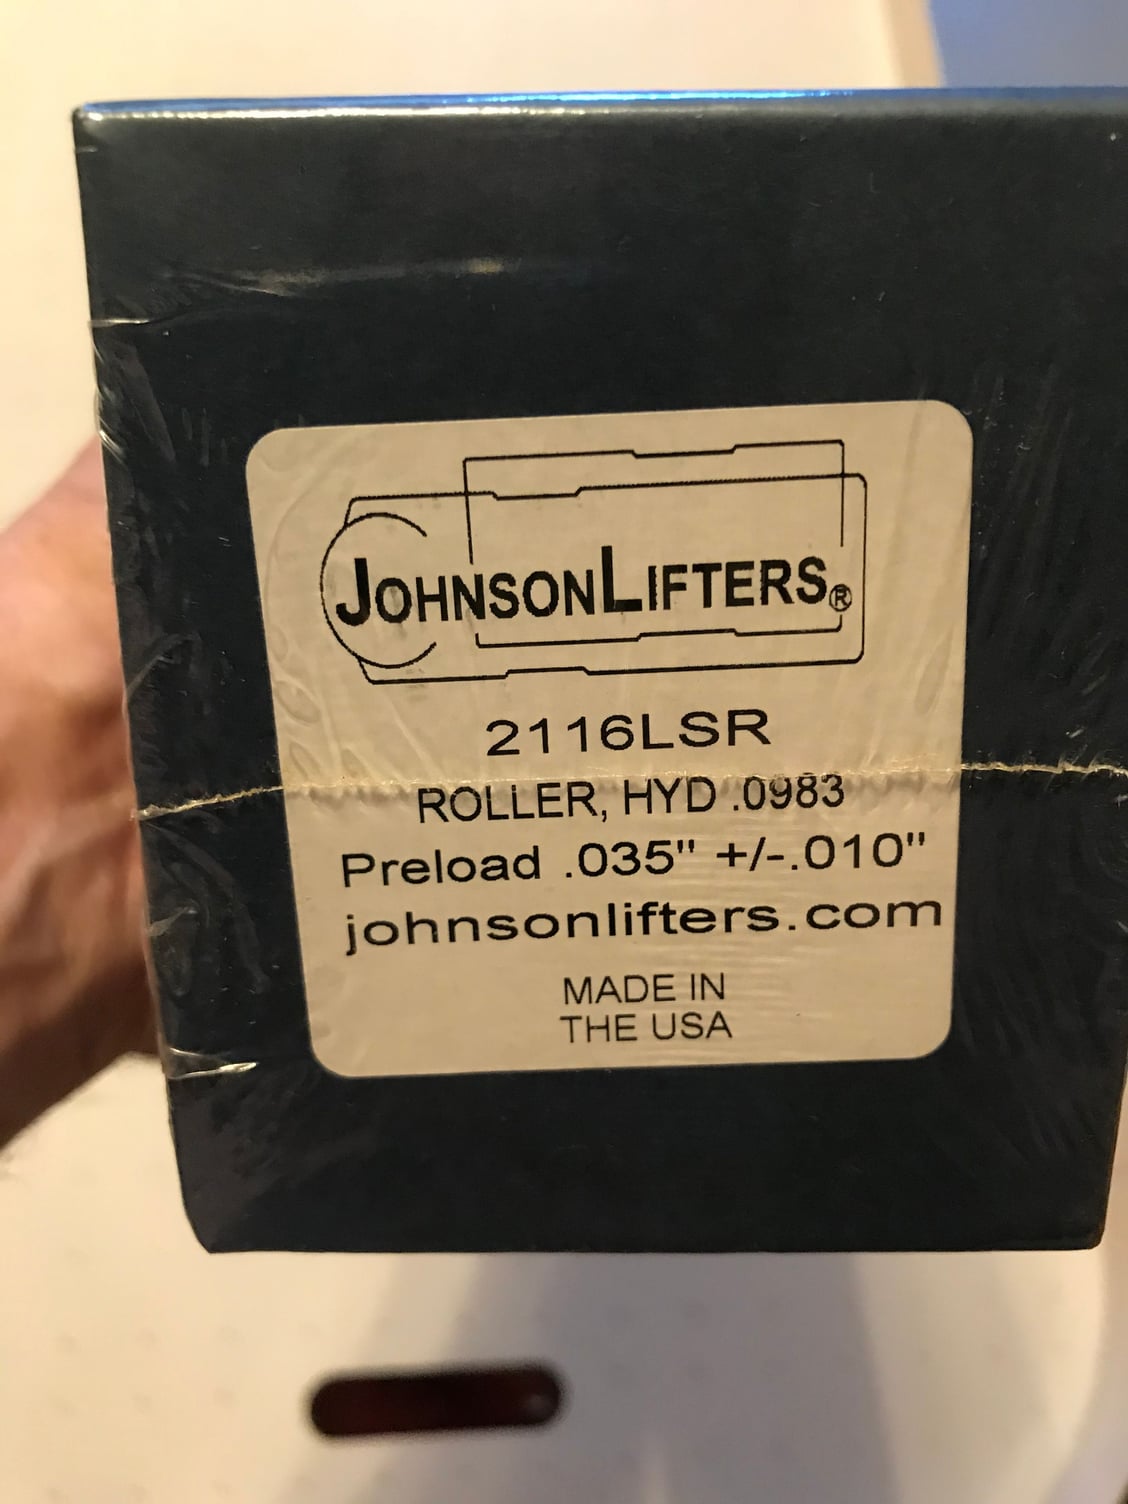 FS (For Sale) Johnson lifters 2116LSR - CorvetteForum - Chevrolet ...